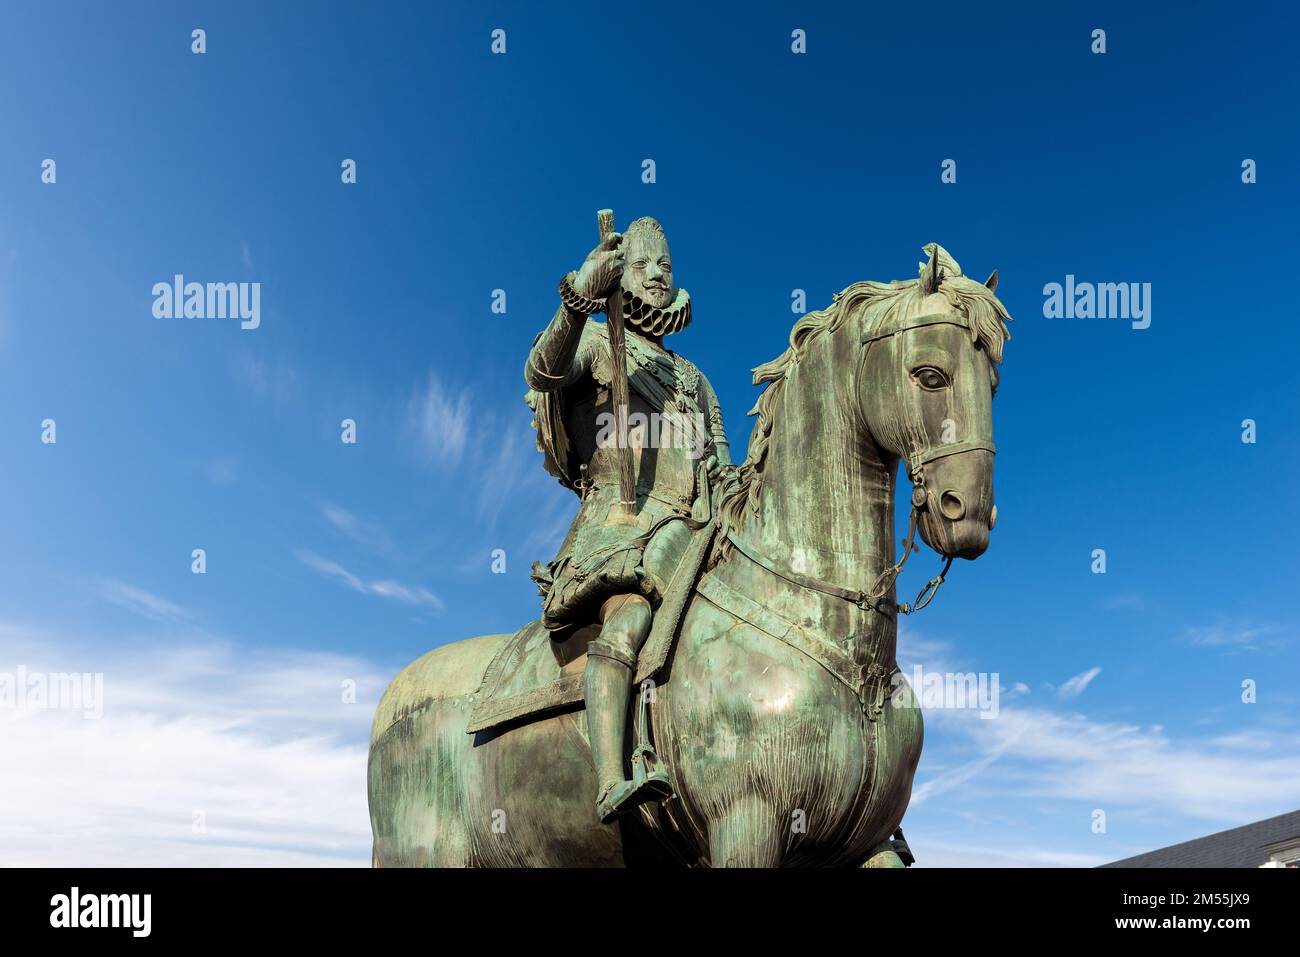 Statua bronzea del re Filippo III sul Cavebro (Felipe III o Felipe el Piadoso), di Giambologna e Pietro Tacca in Plaza Mayor (piazza principale), Madrid. Foto Stock